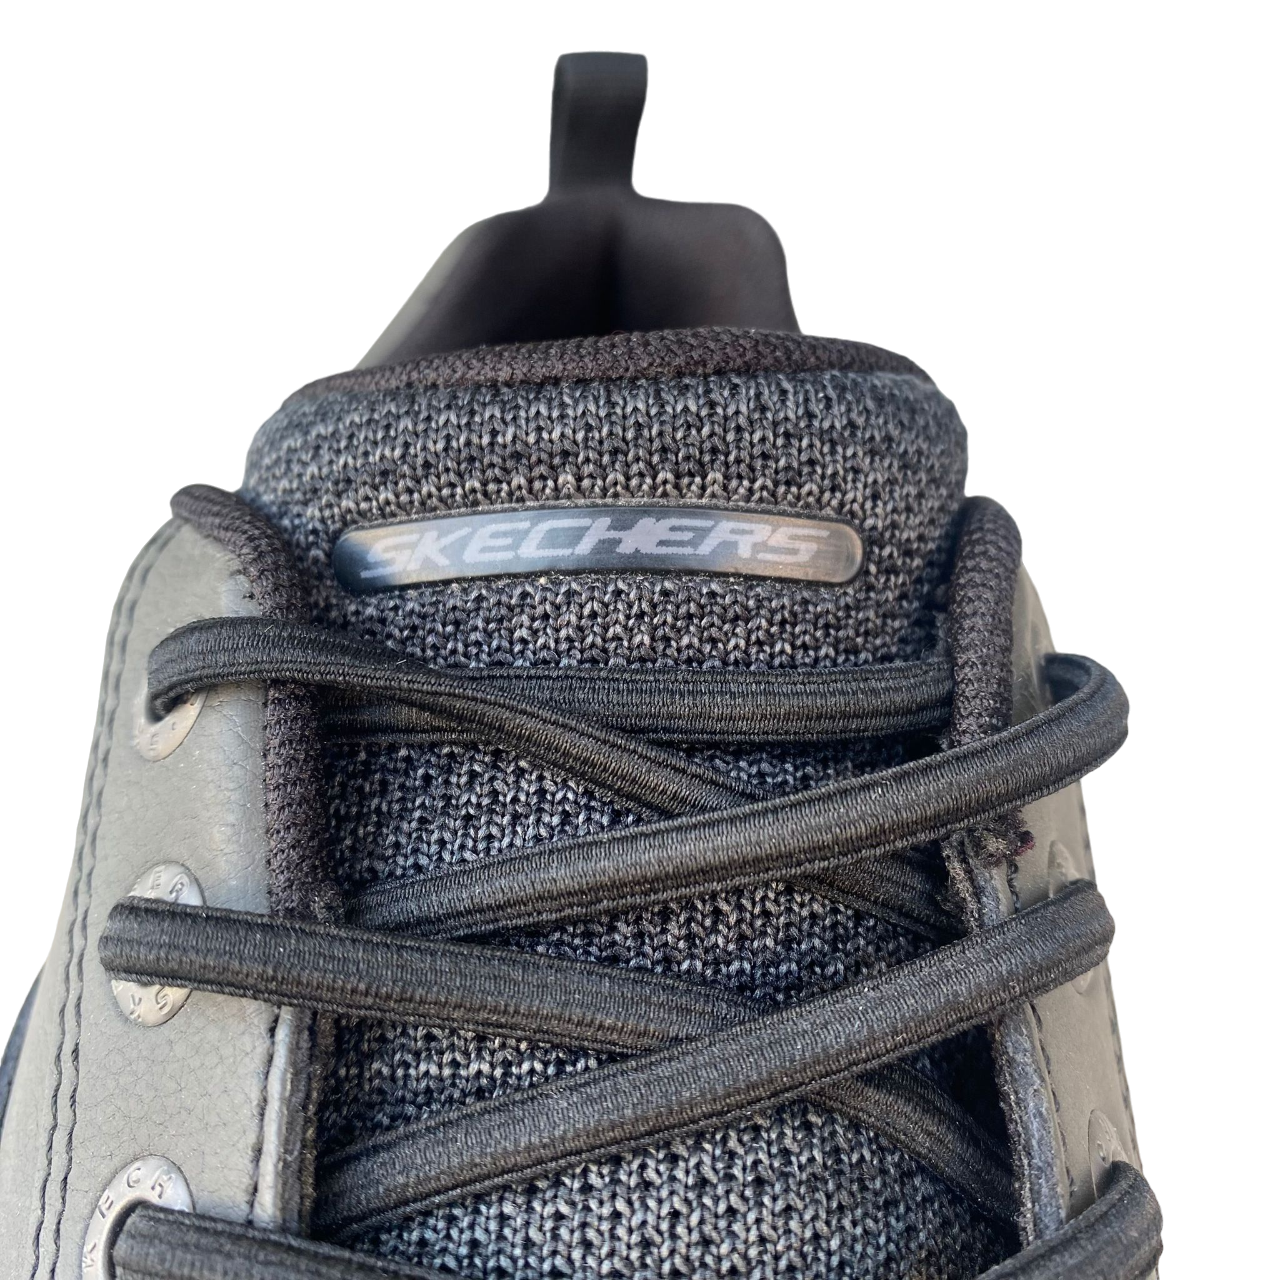 Skechers scarpa casual da uomo Delson Fonzo 65641 BLK black